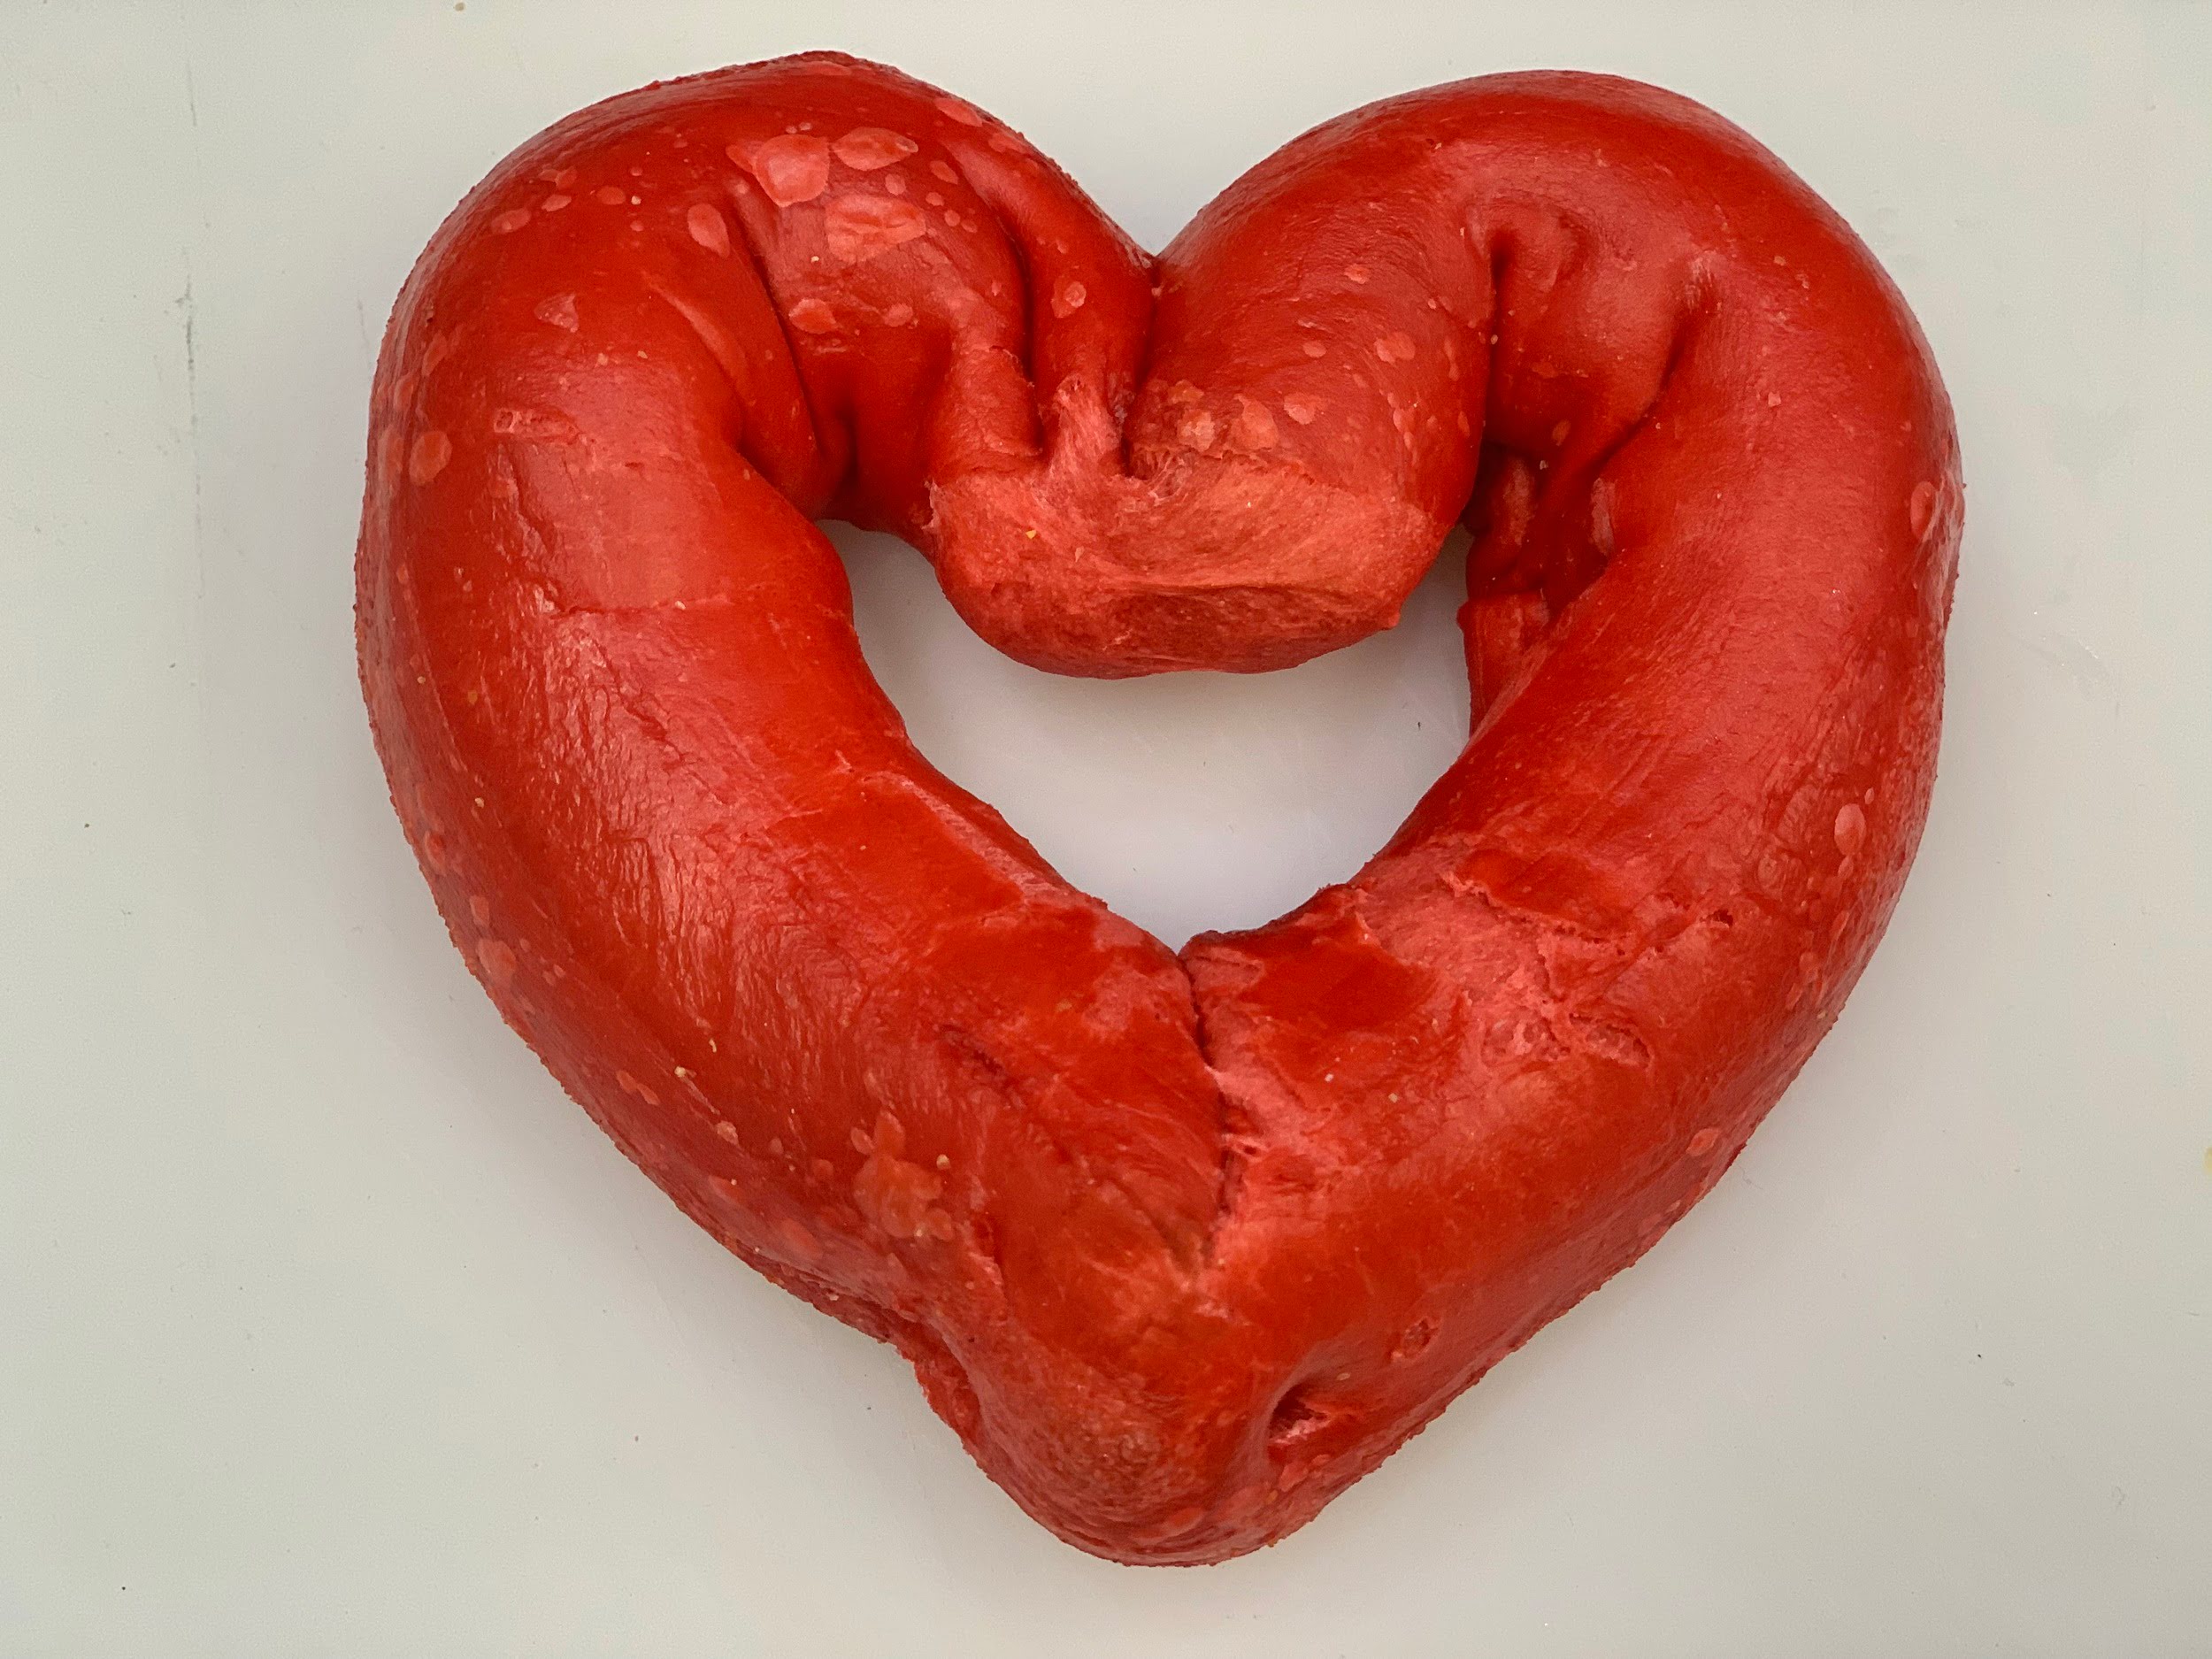 Heart shaped bagel